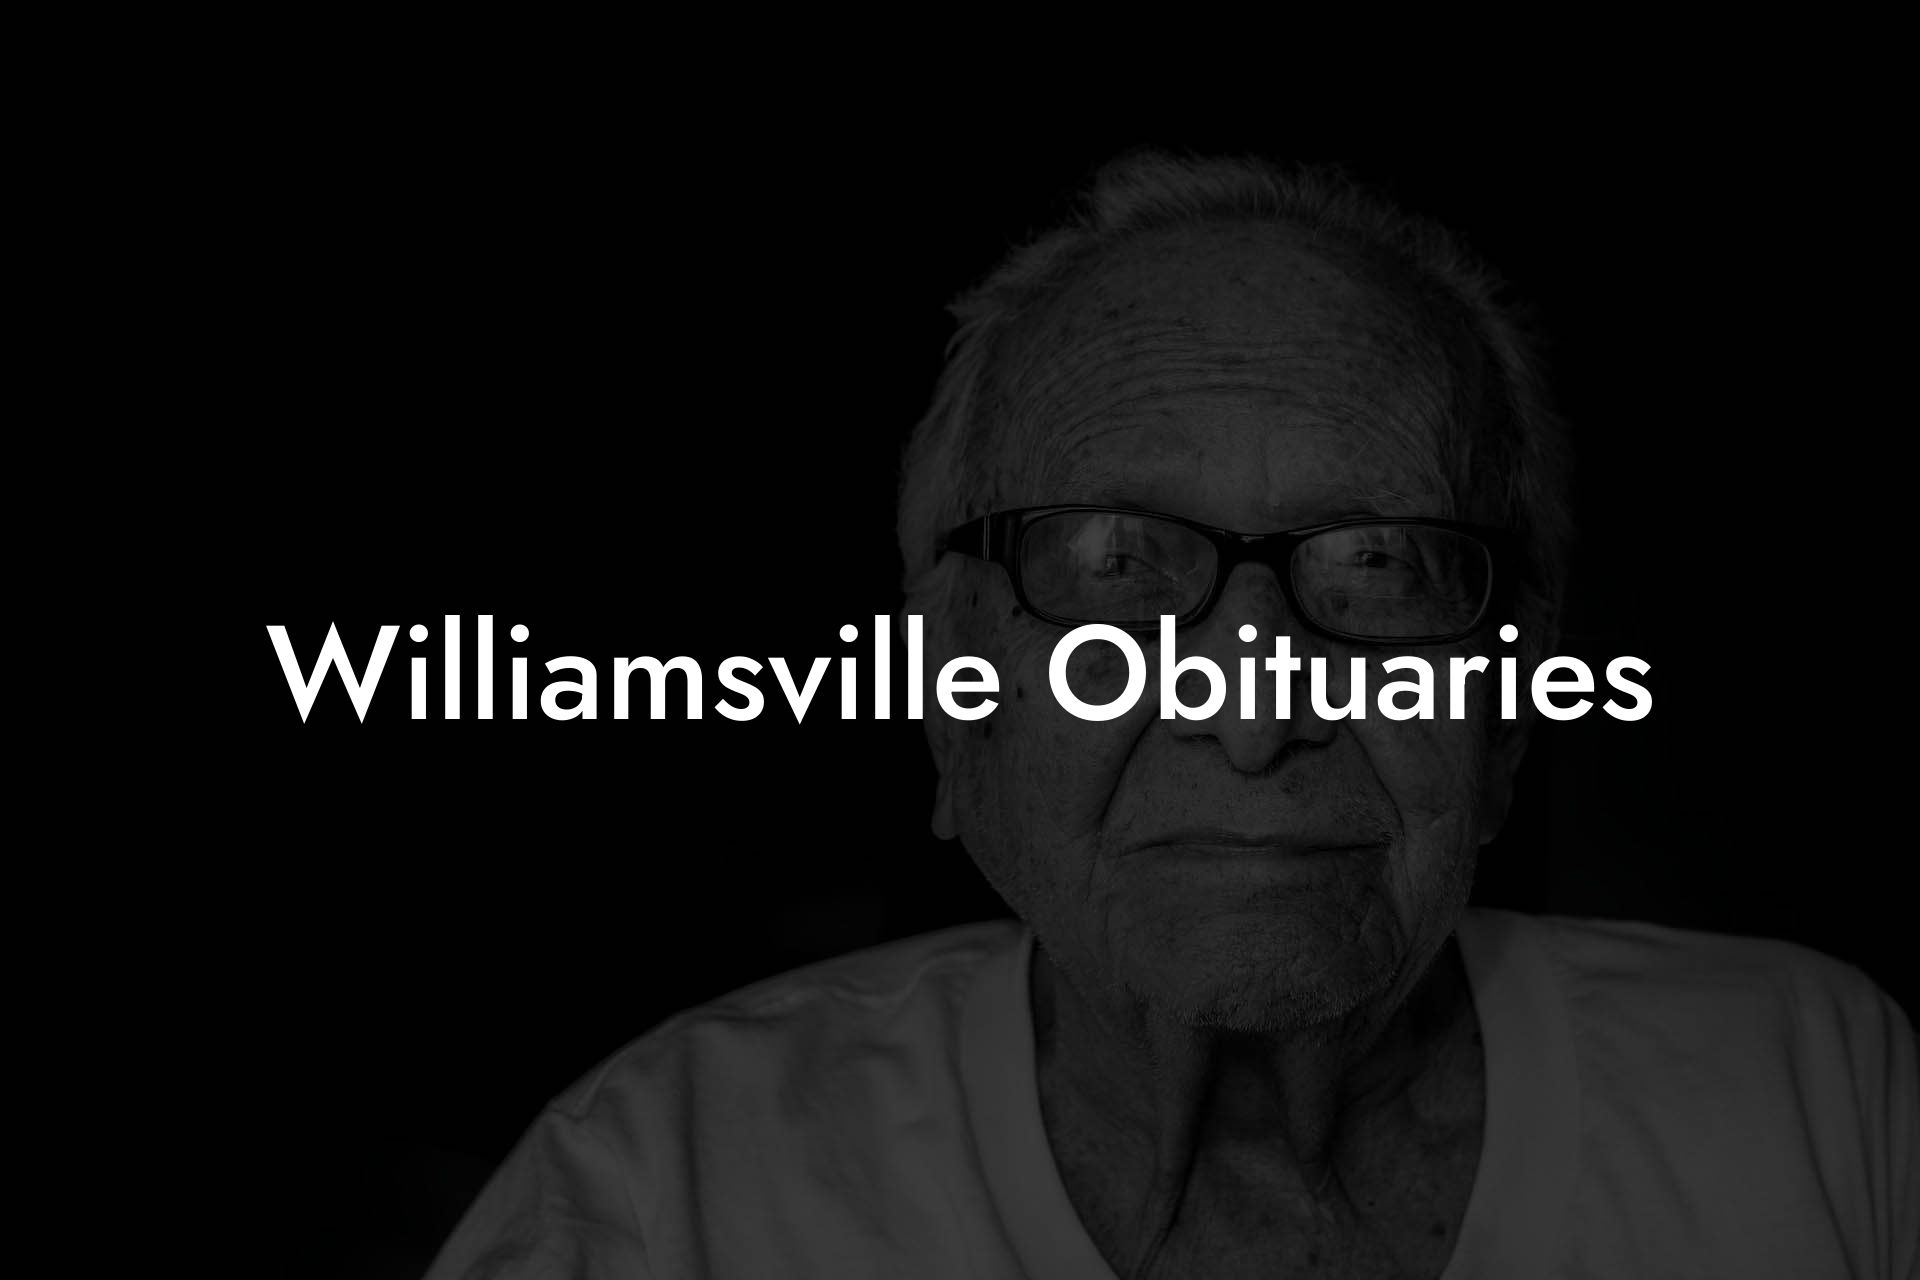 Williamsville Obituaries